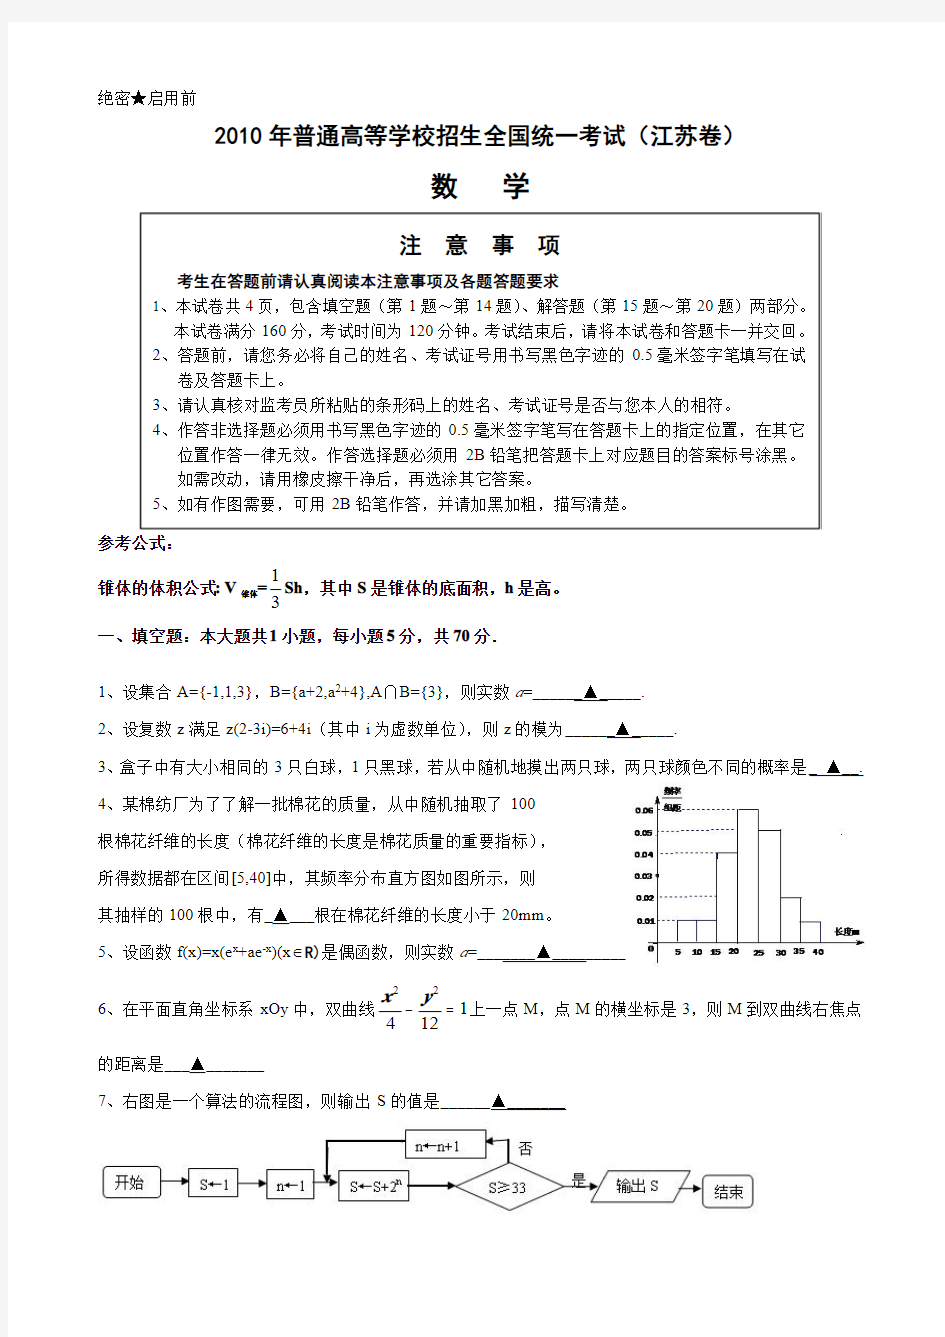 【真题】2010年江苏省高考数学试题(含附加题+答案)